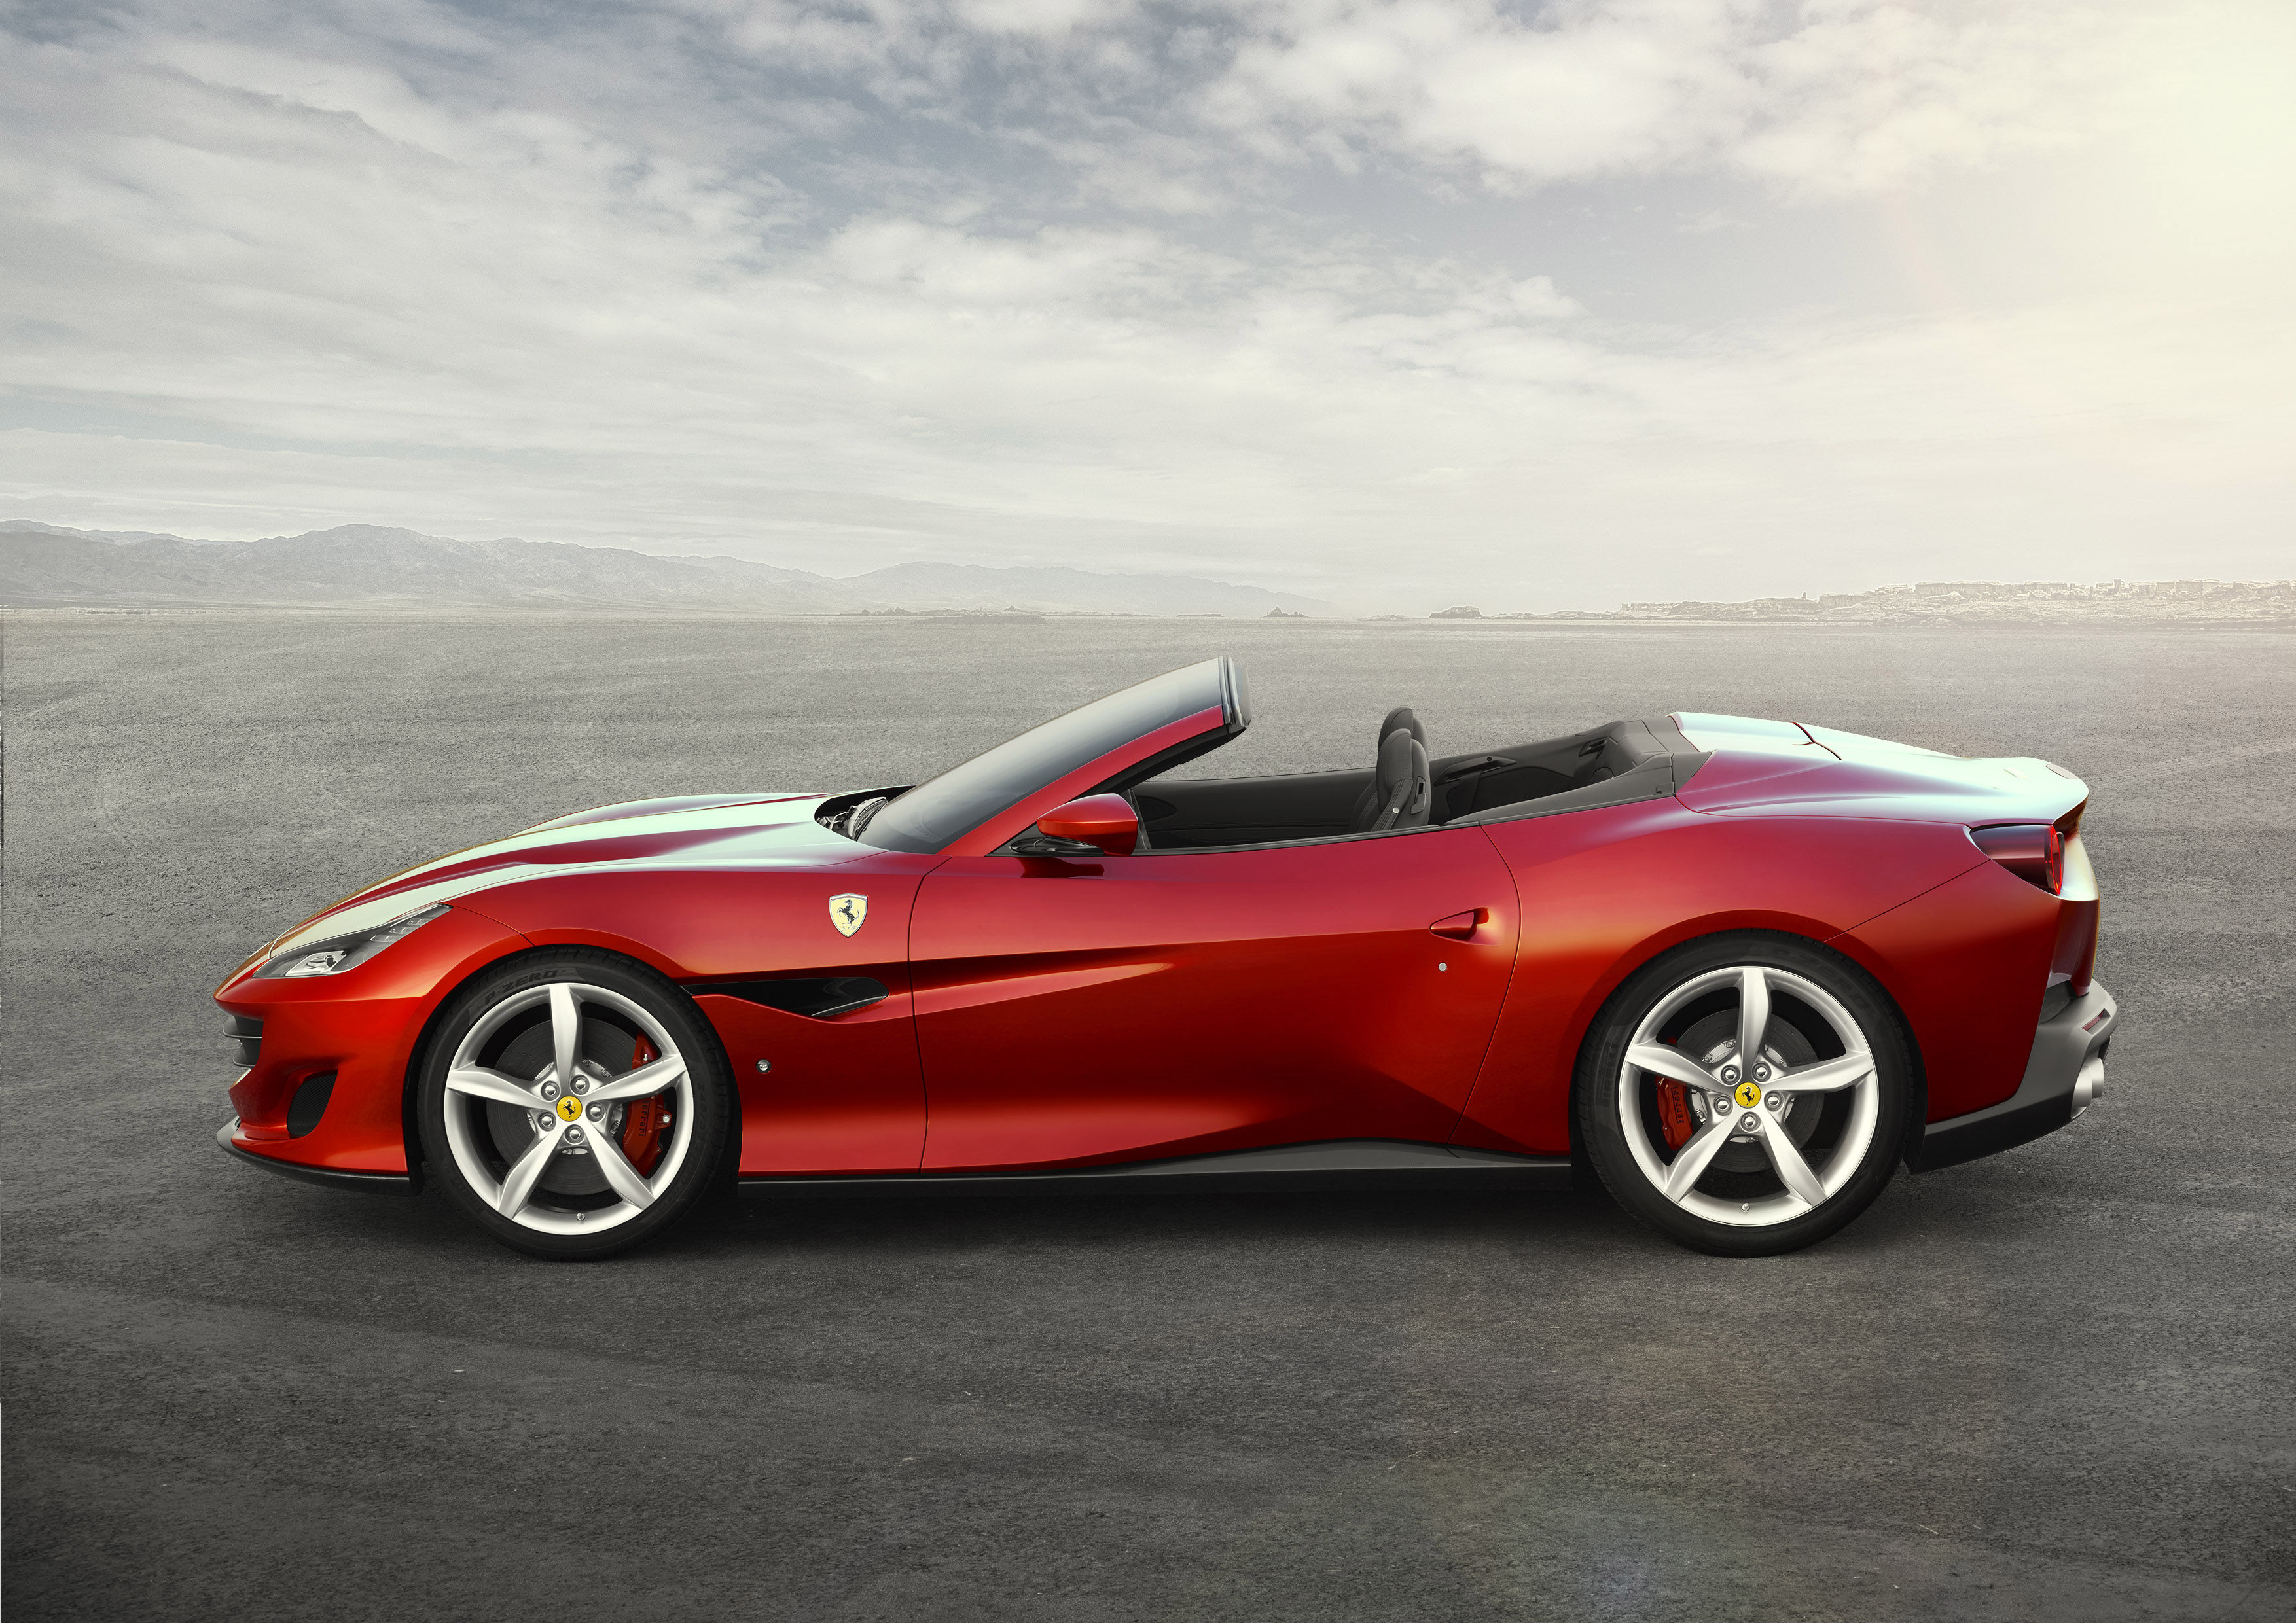 The Italian job: Ferrari’s Portofino is the new entry-level stallion